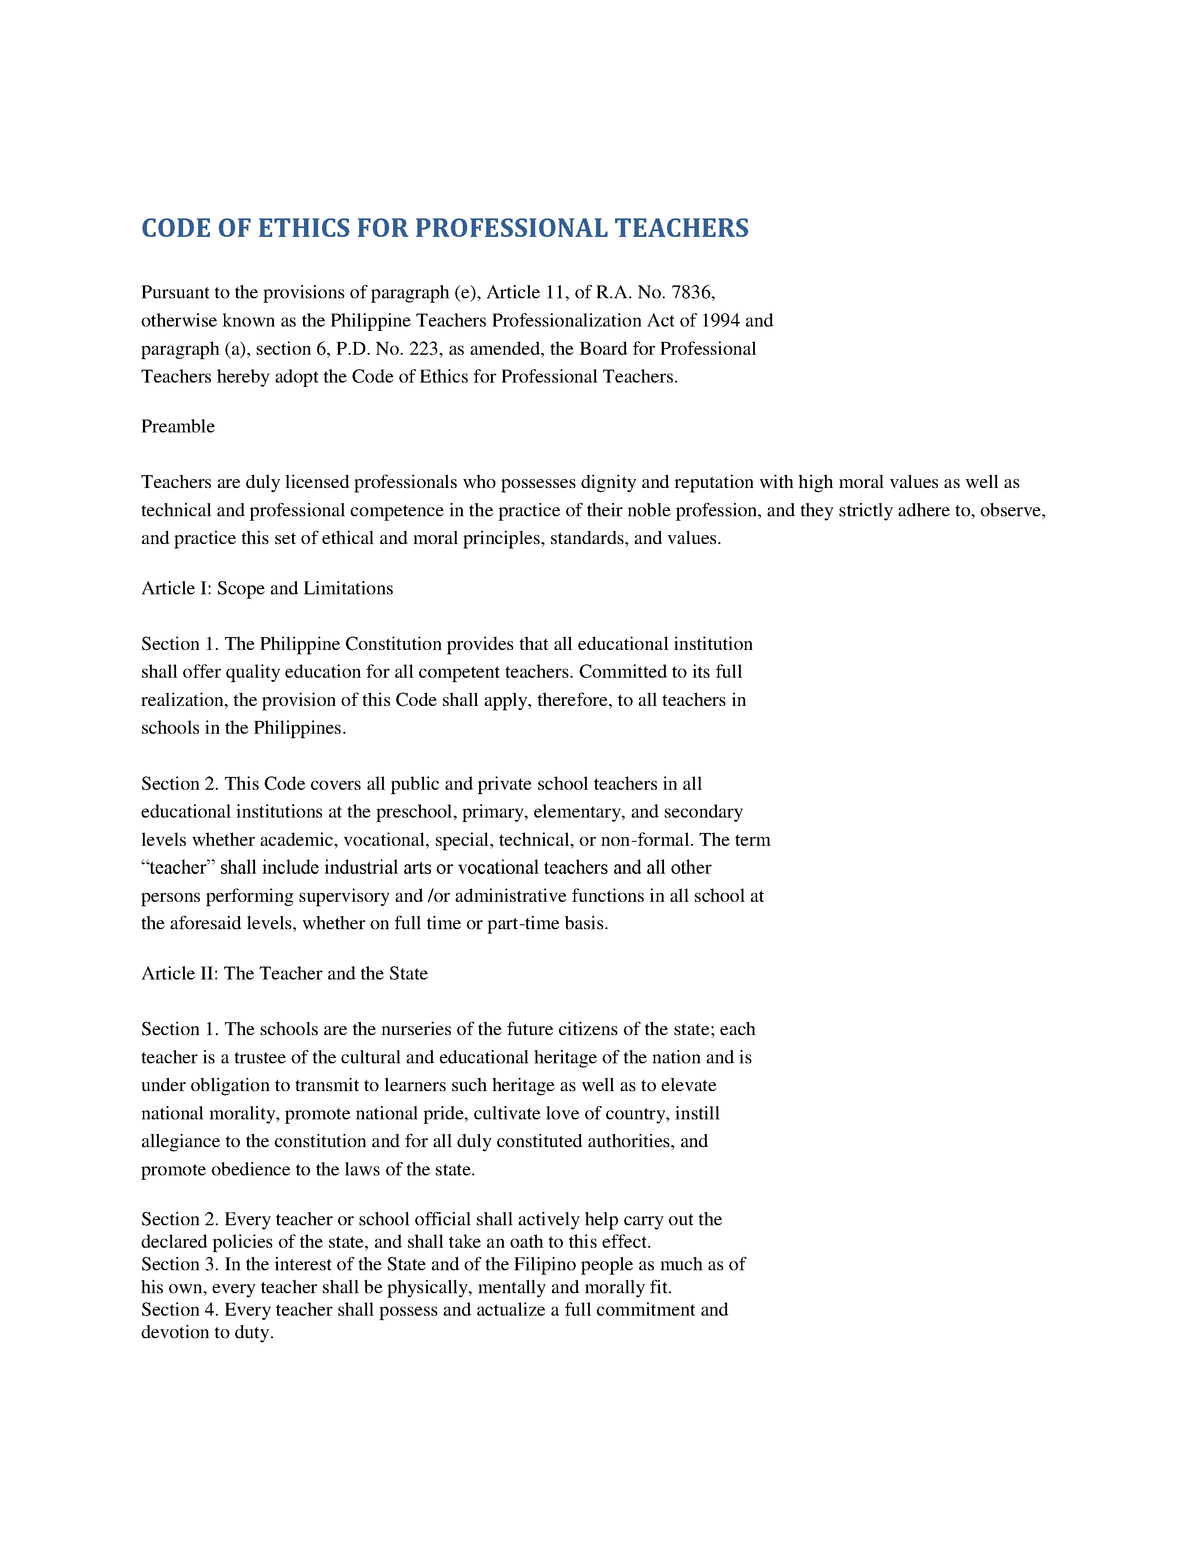 Code Of Ethics For Professional Teachers Evalenzuela S2 V2 Studocu